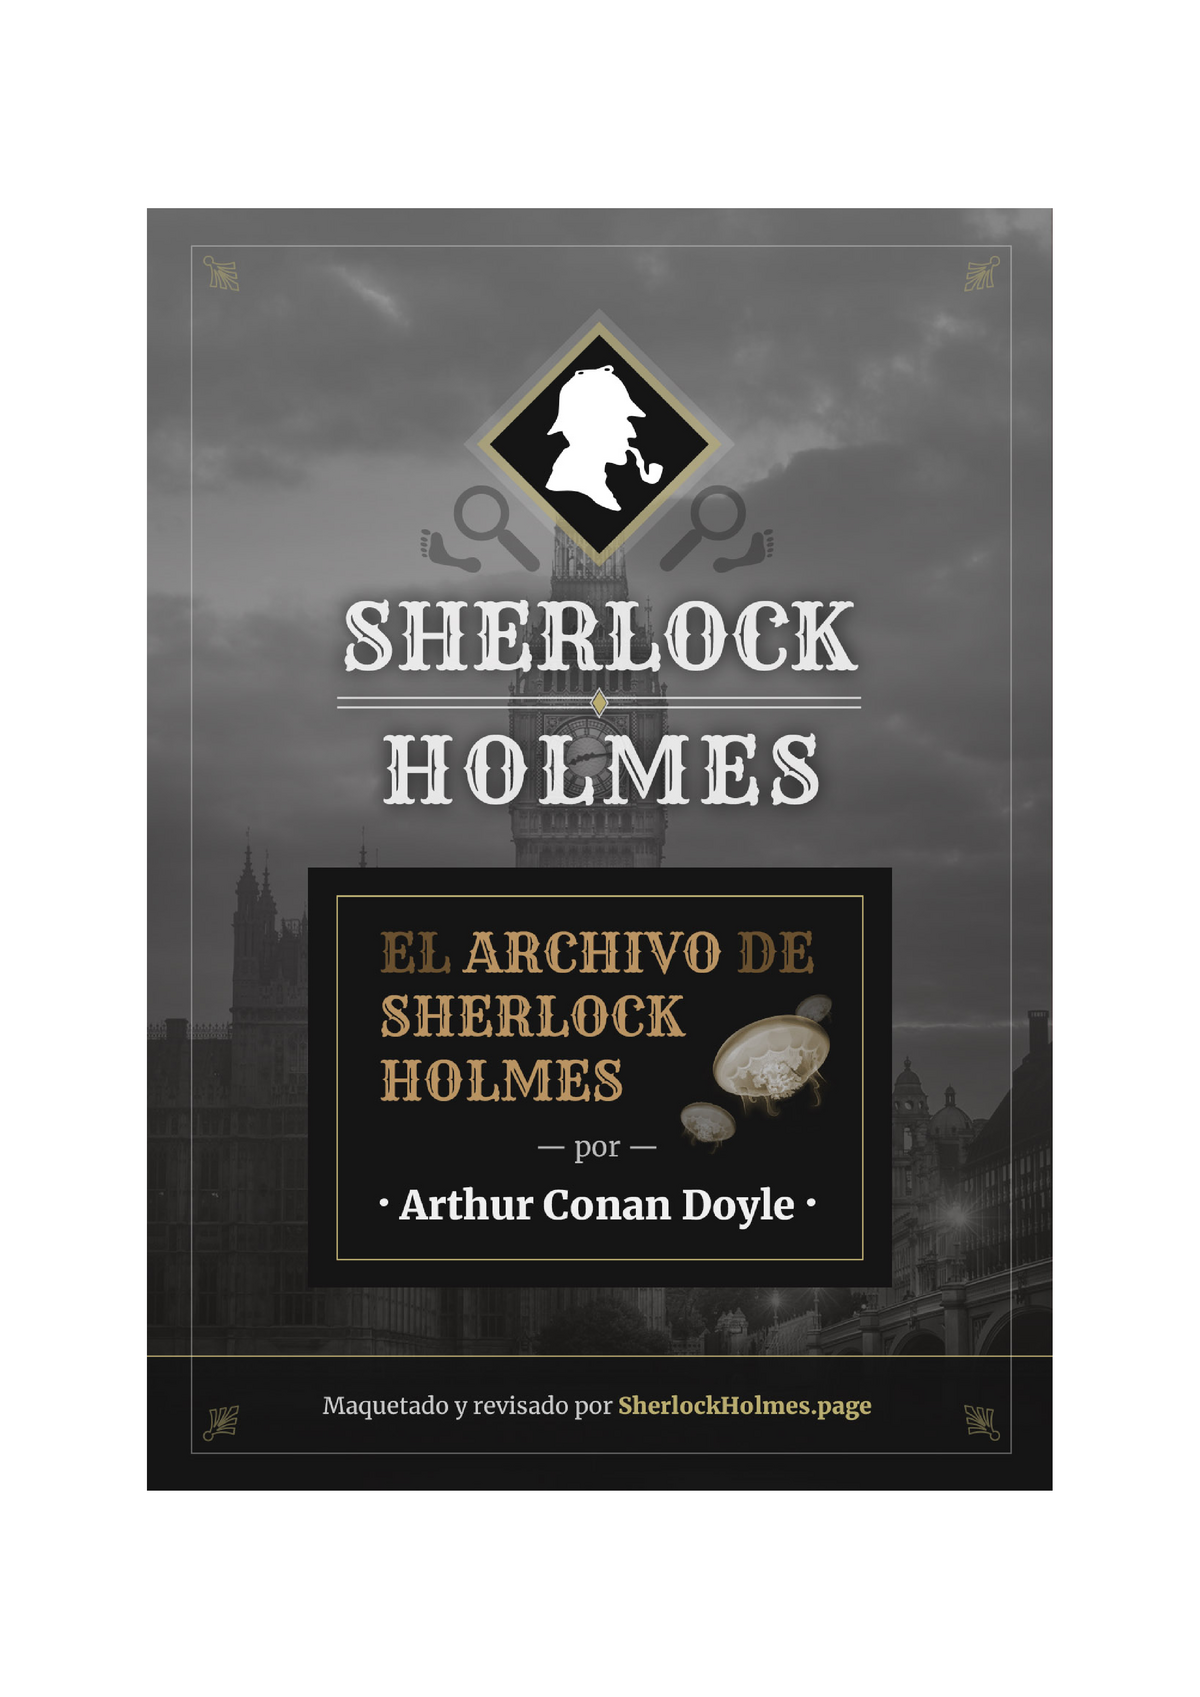 muestra estudiante universitario retroceder El archivo de sherlock holmes-arthur conan doyle - El Archivo de Sherlock  Holmes ****** Por Arthur - Studocu